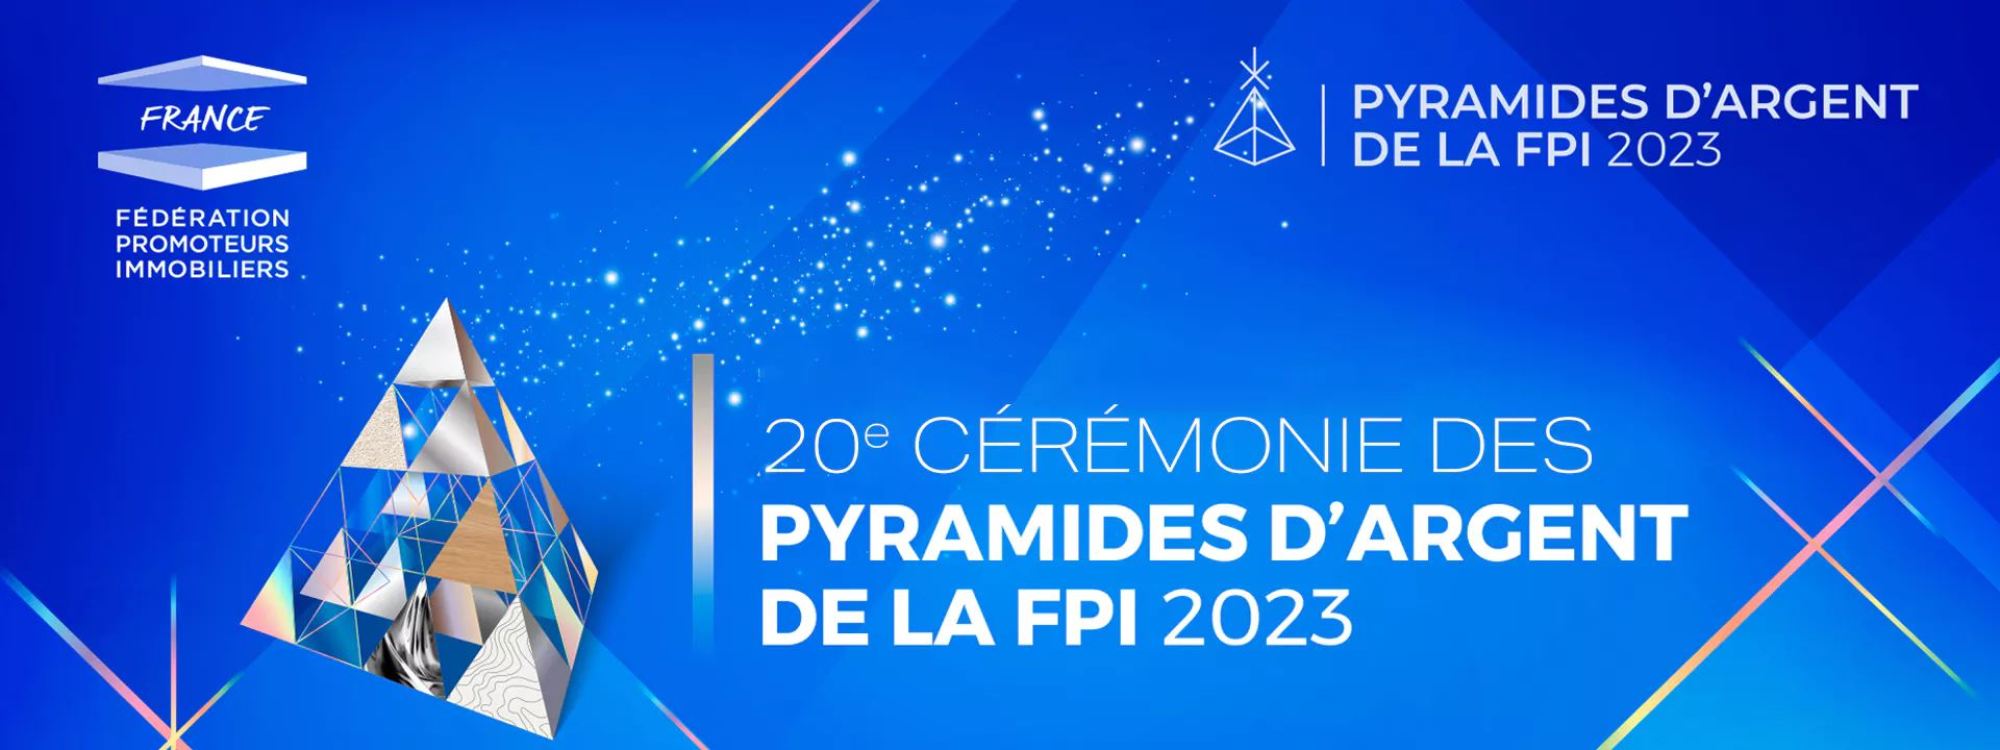 Affiche de la 20ème cérémonie des pyramides d'argent de la FPI